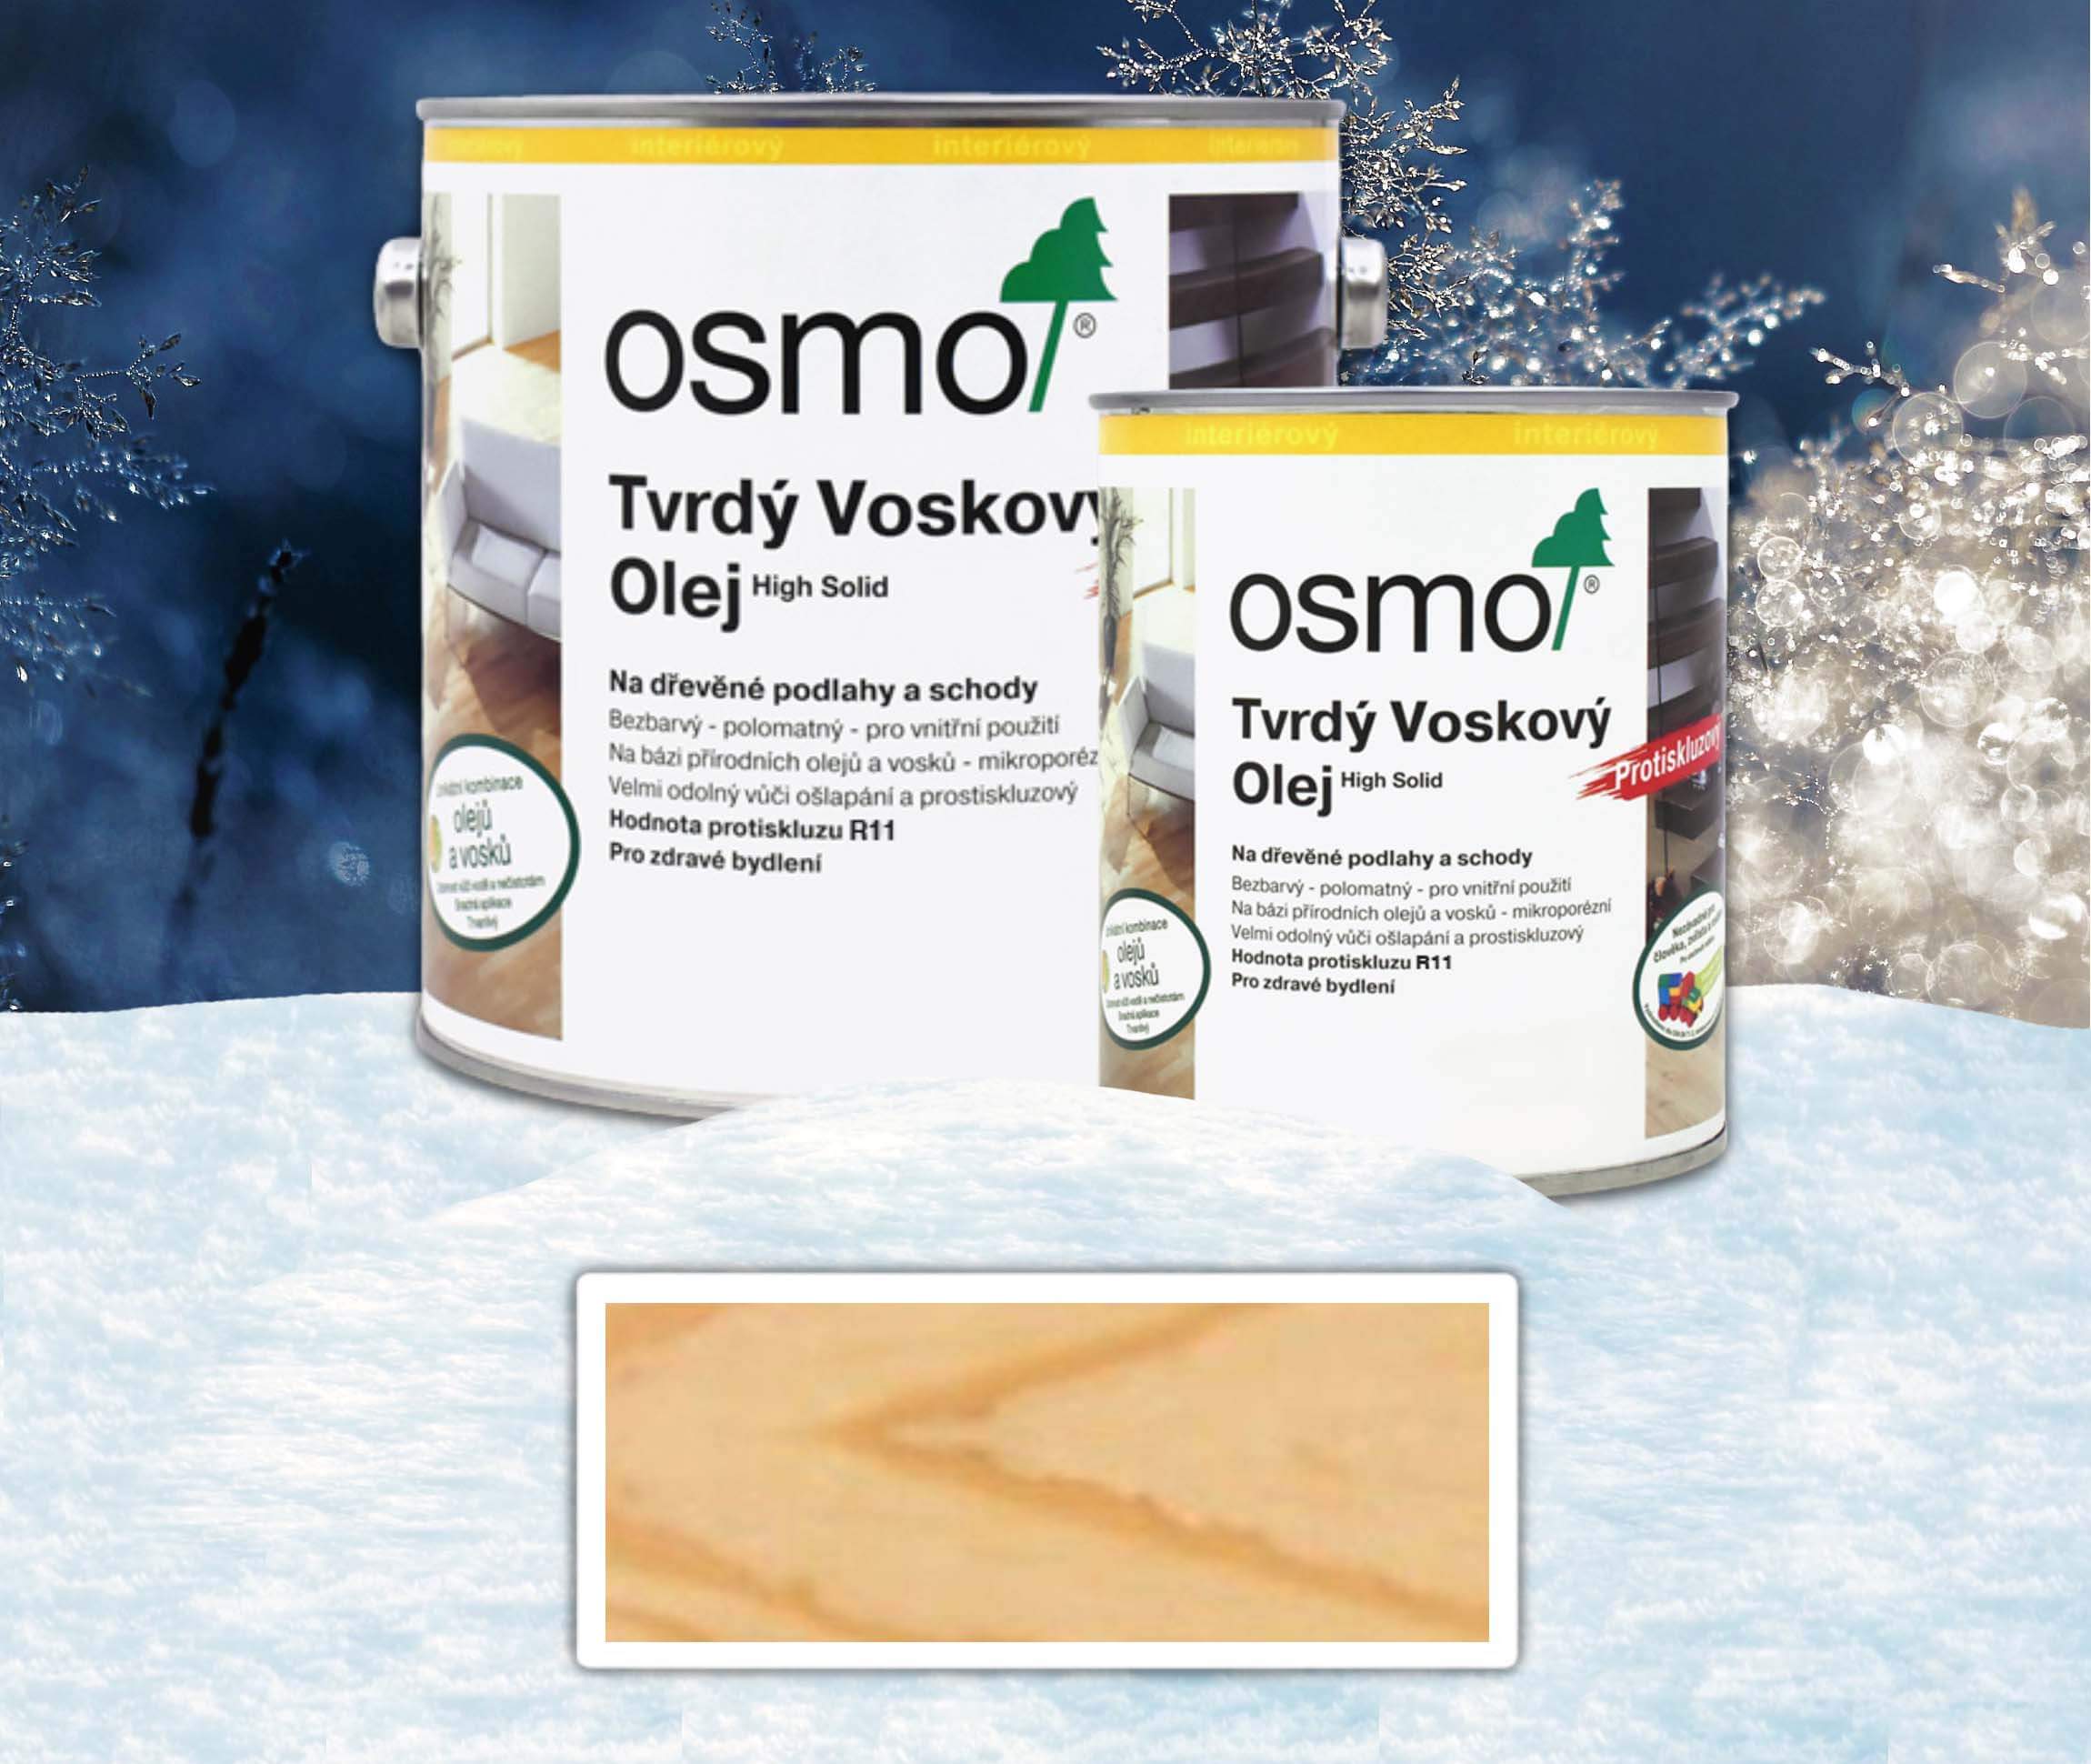 OSMO sada - tvrdý voskový olej pro interiéry protiskluzový R9 2.5 l Bezbarvý 3088 + 0.75 l ZDARMA